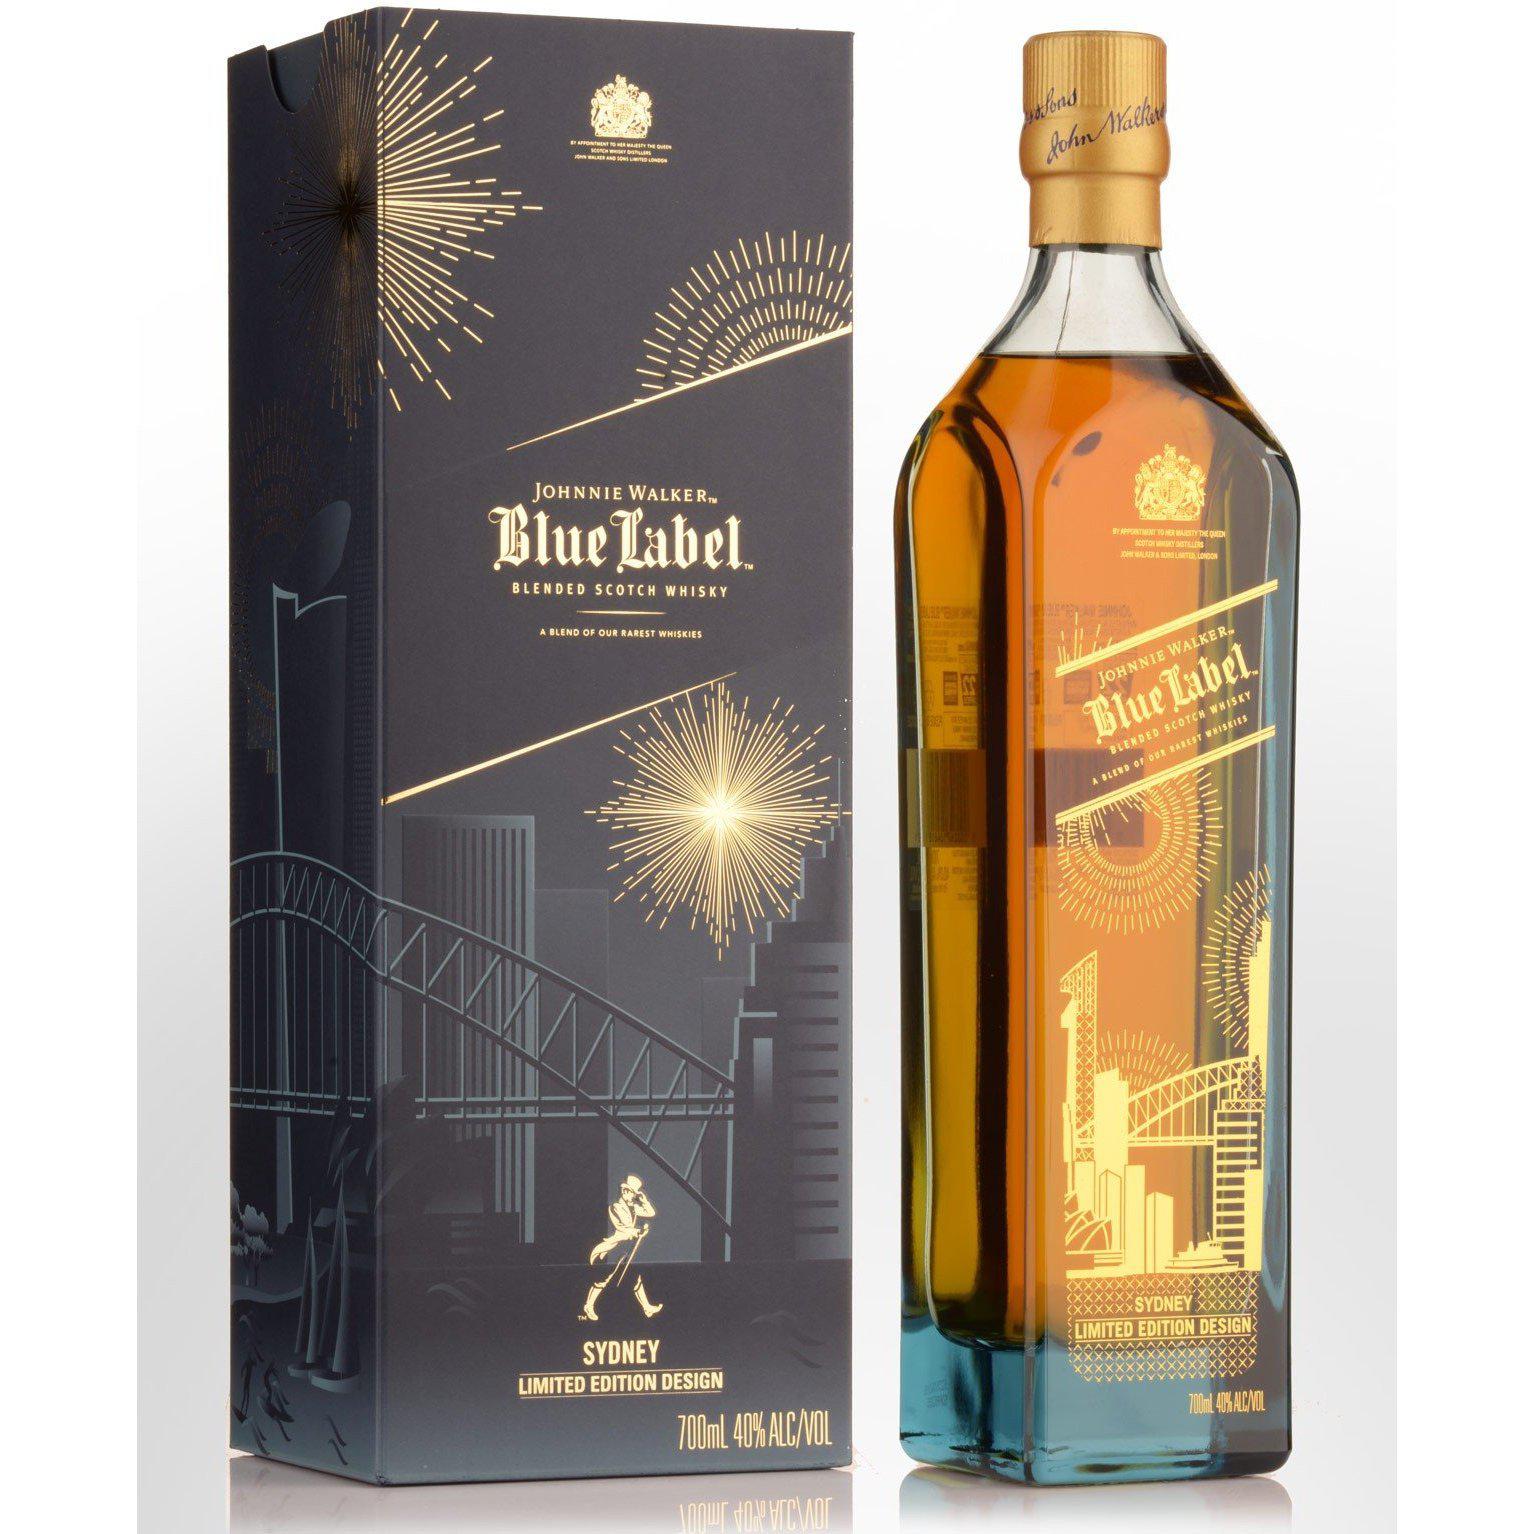 Johnnie Walker Blue Label Sydney Limited Edition Design Blended Scotch Whisky 700ml